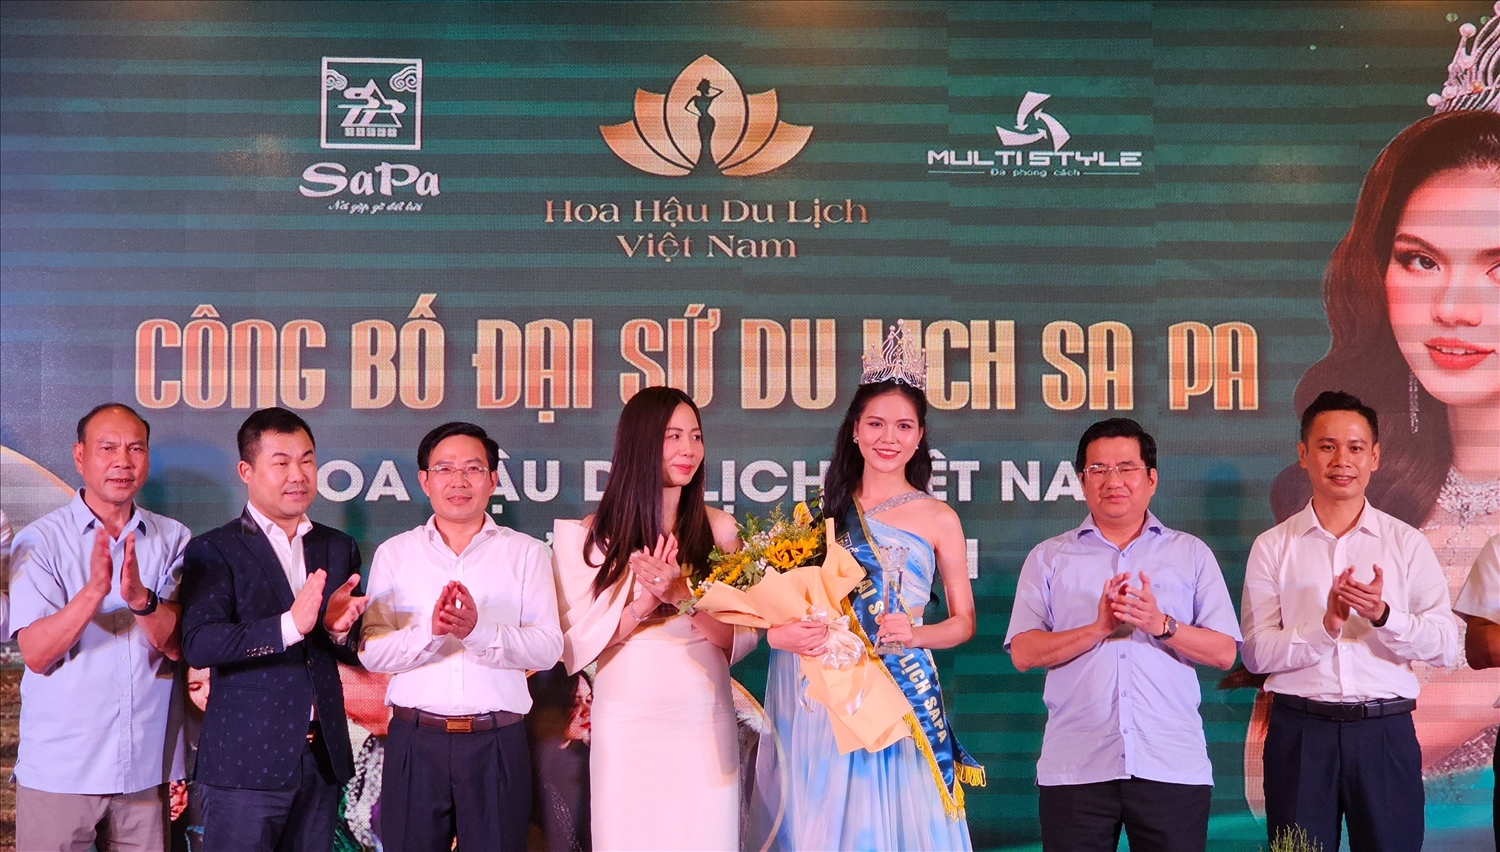 Công bố Đại sứ du lịch Sa Pa đối với Hoa hậu du lịch Việt Nam 2022 Lương Kỳ Duyên.